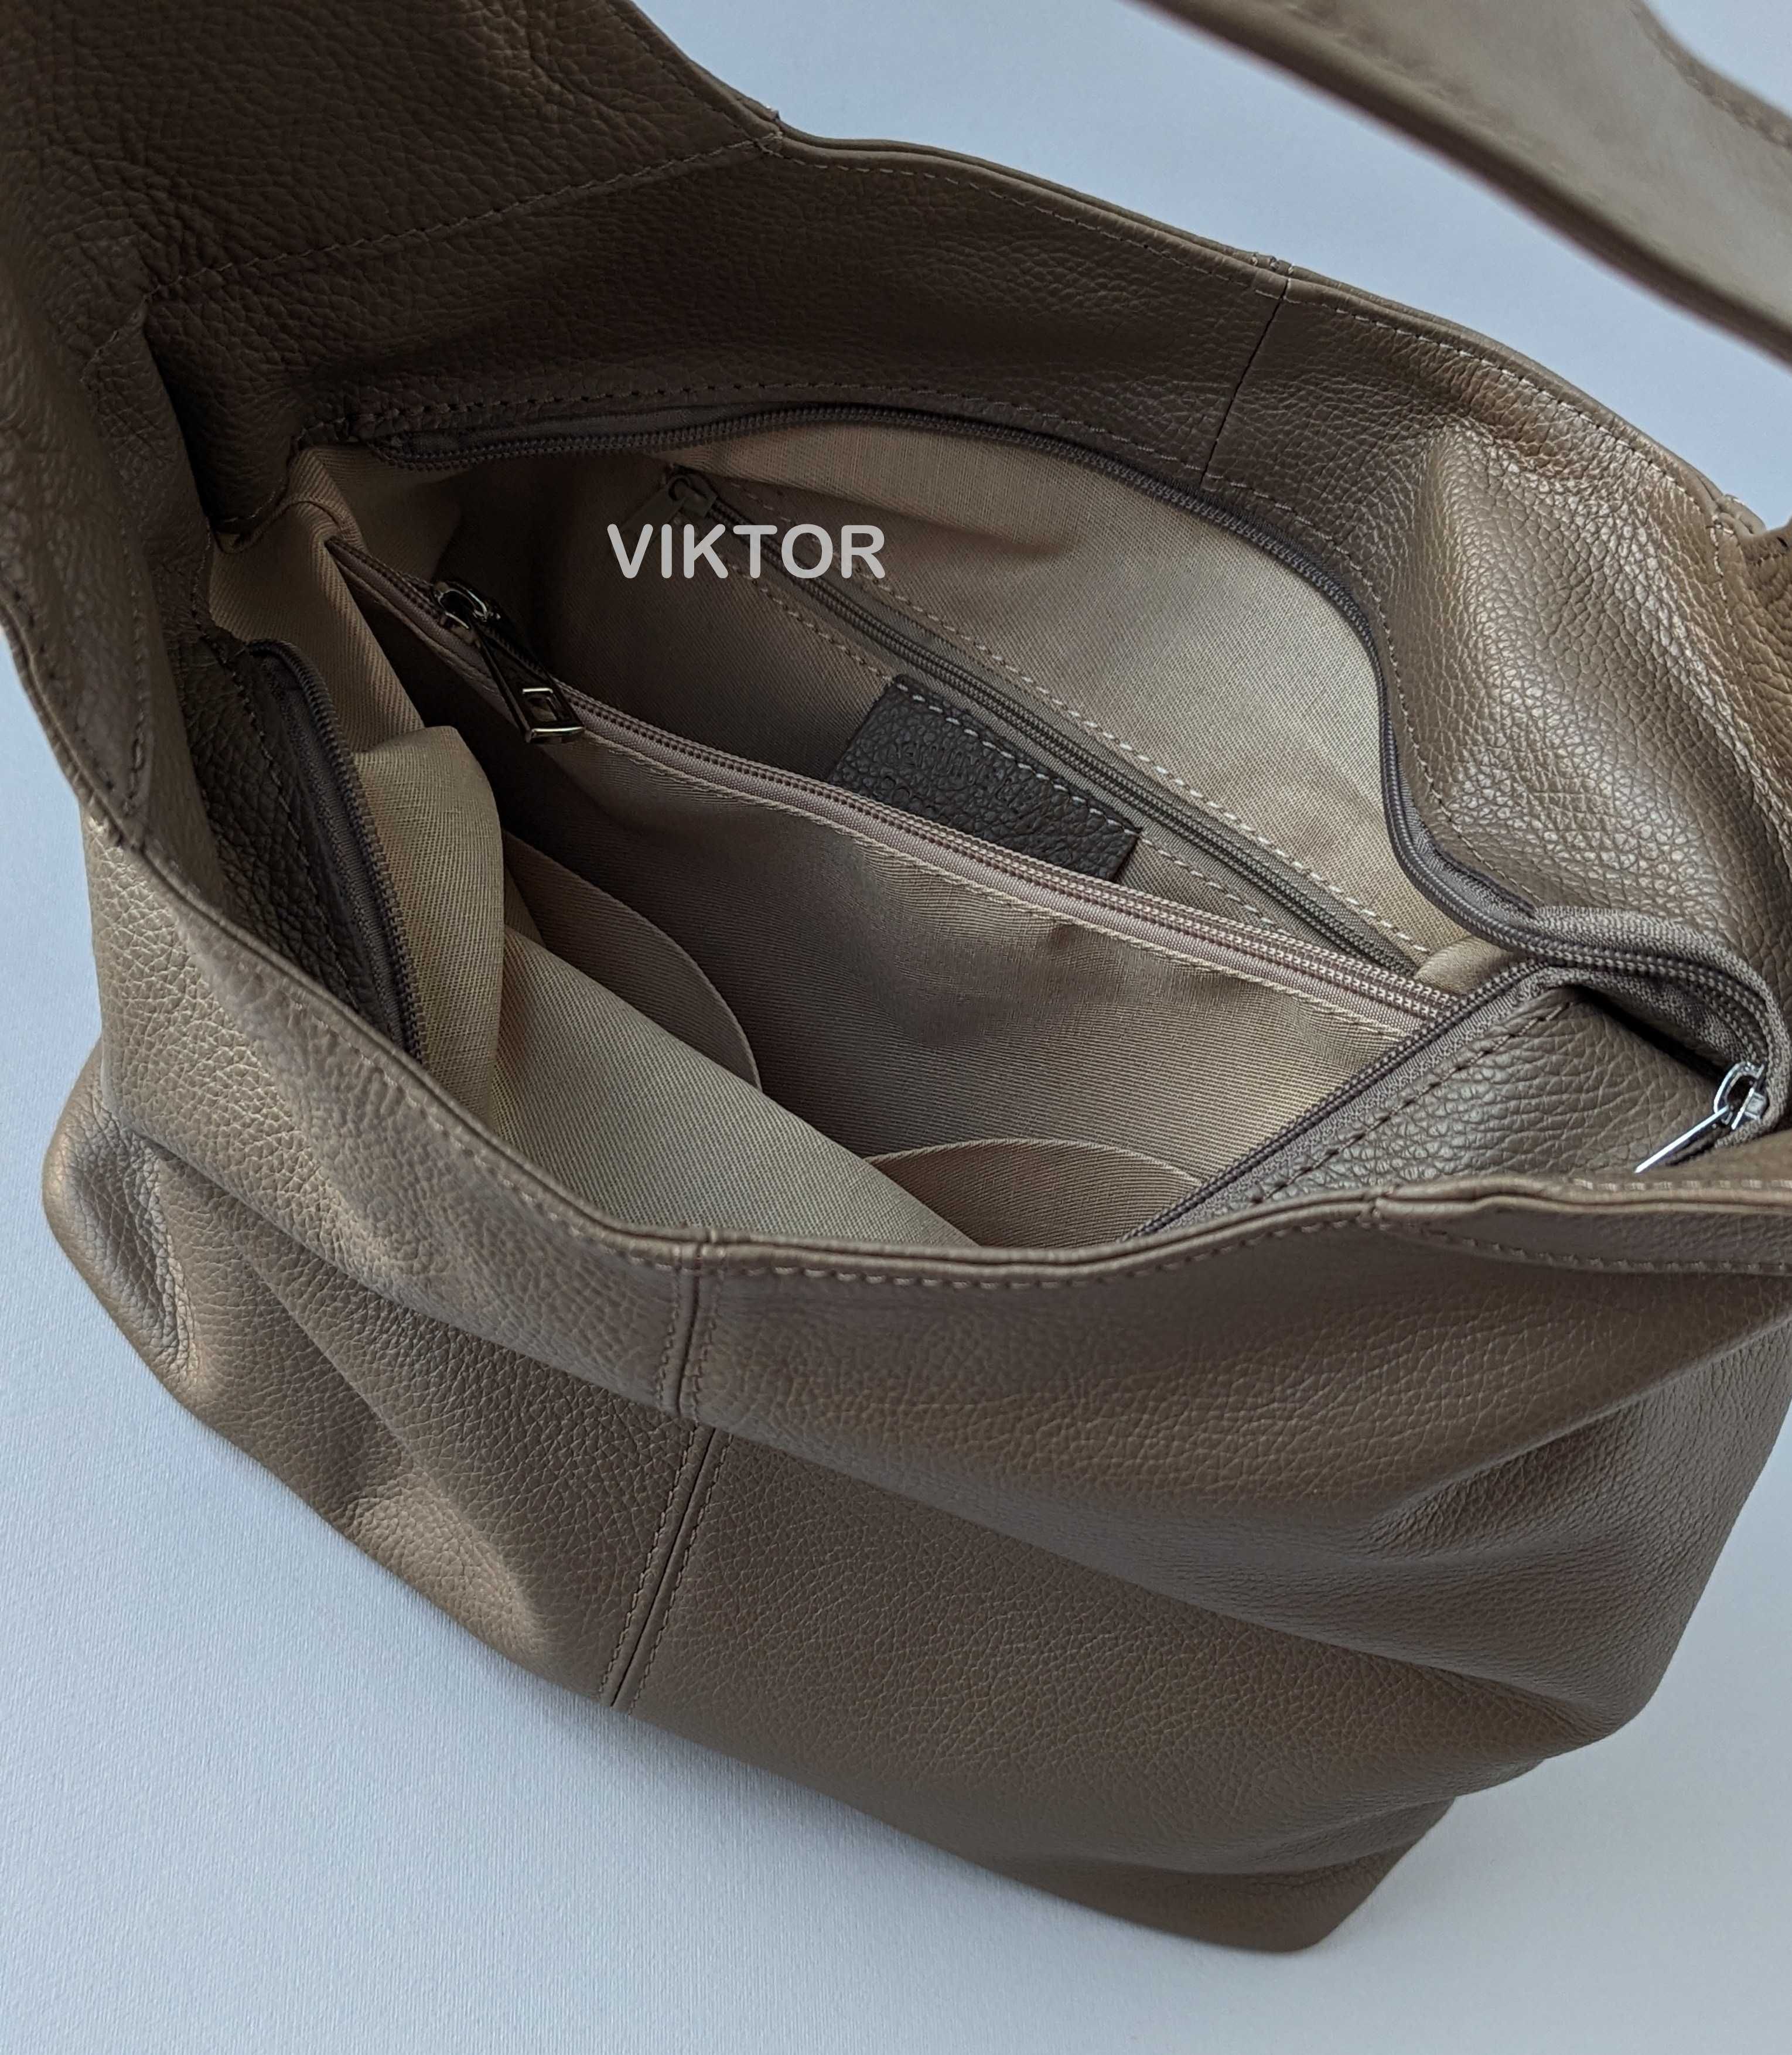 Большая кожаная сумка Hobo мешок VERA PELLE с одной ручкой. Италия.